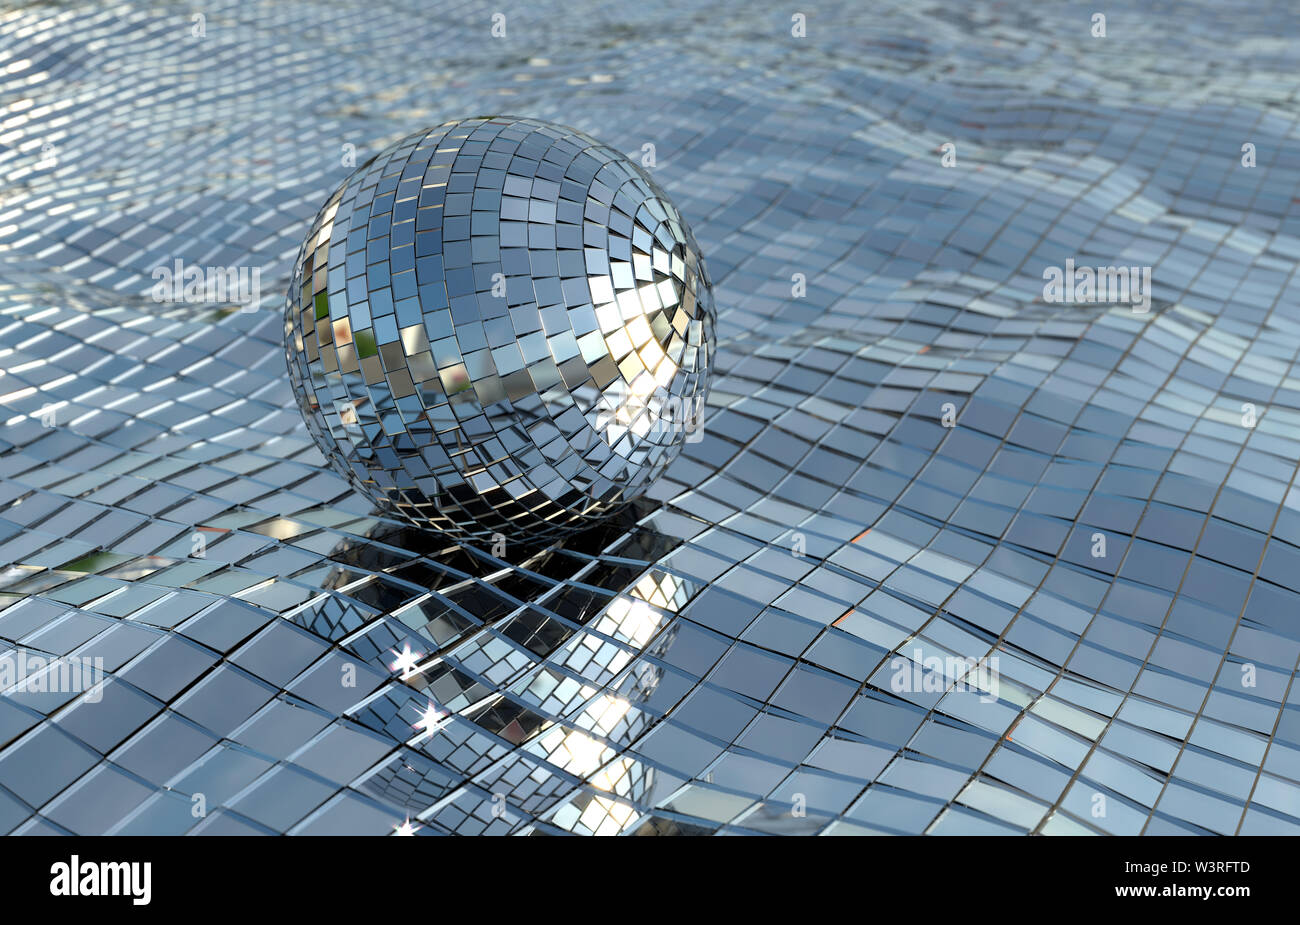 https://c8.alamy.com/compde/w3rftd/disco-ball-oder-ball-spiegel-schwimmend-auf-einem-spiegel-meer-in-der-sonne-bereit-fur-eine-kuhlung-disco-schwimmen-hintergrundbild-flyer-poster-w3rftd.jpg